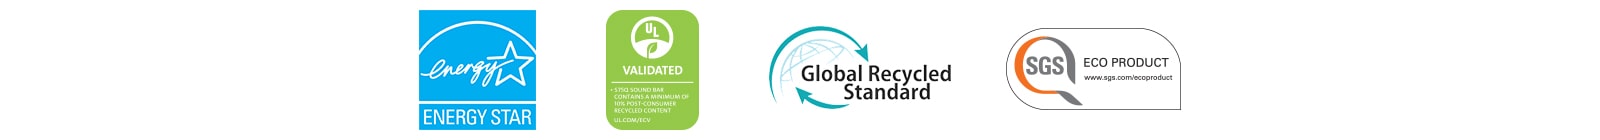 Από αριστερά, φαίνονται τα λογότυπα ENERGY STAR (λογότυπο), UL VALIDATED (λογότυπο), Global Recycled Standard (λογότυπο), SGS ECO PRODUCT (λογότυπο).